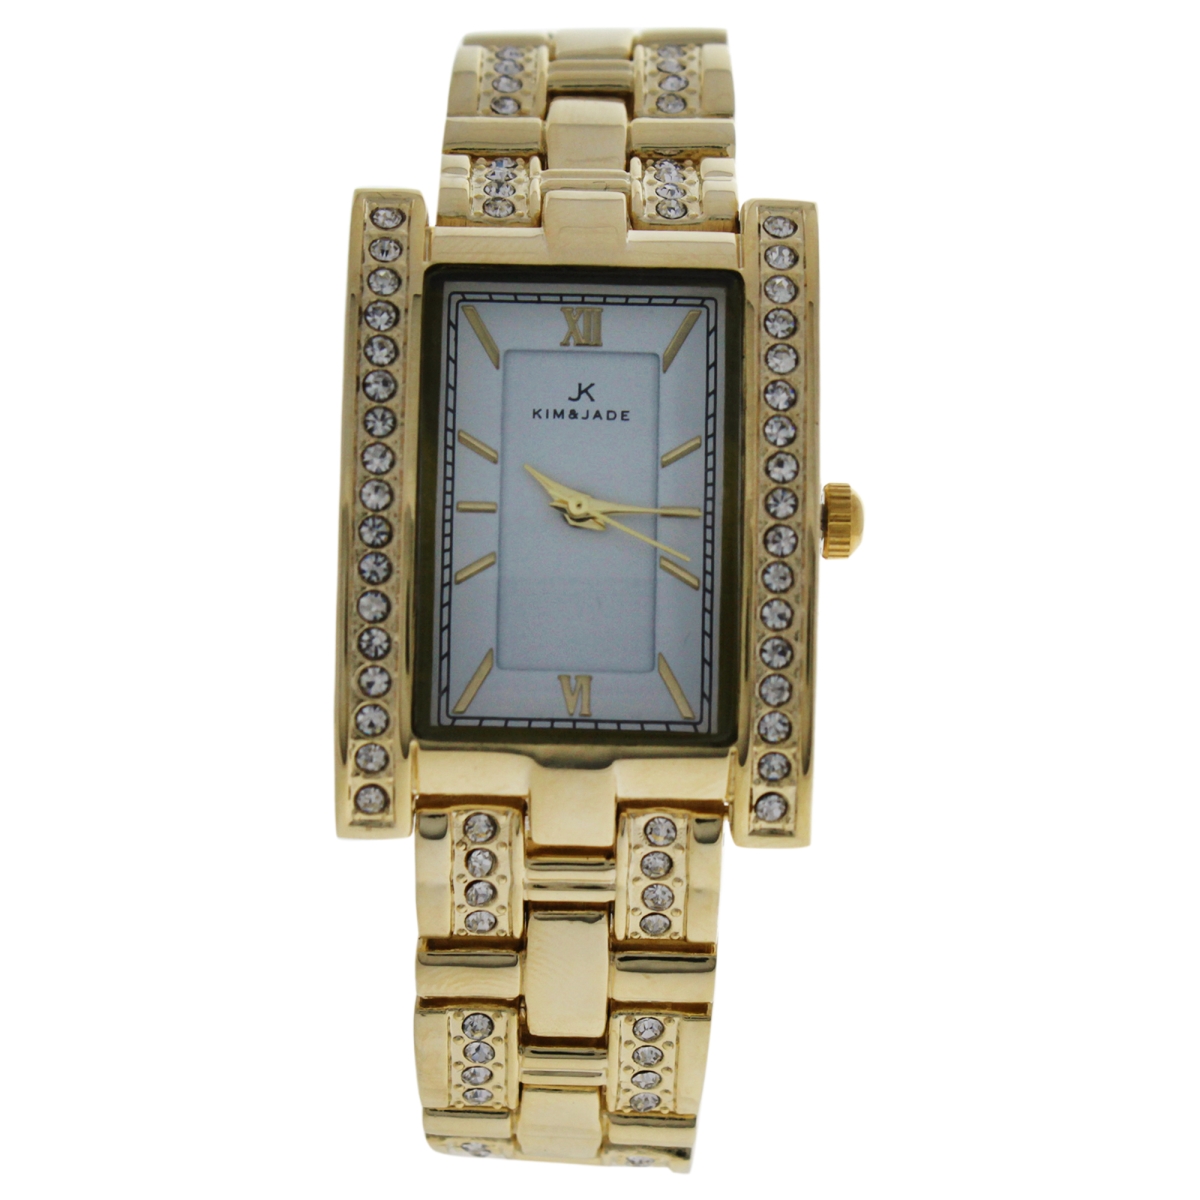 W-wat-1474 Gold Stainless Steel Bracelet Watch For Women - 2060l-gw